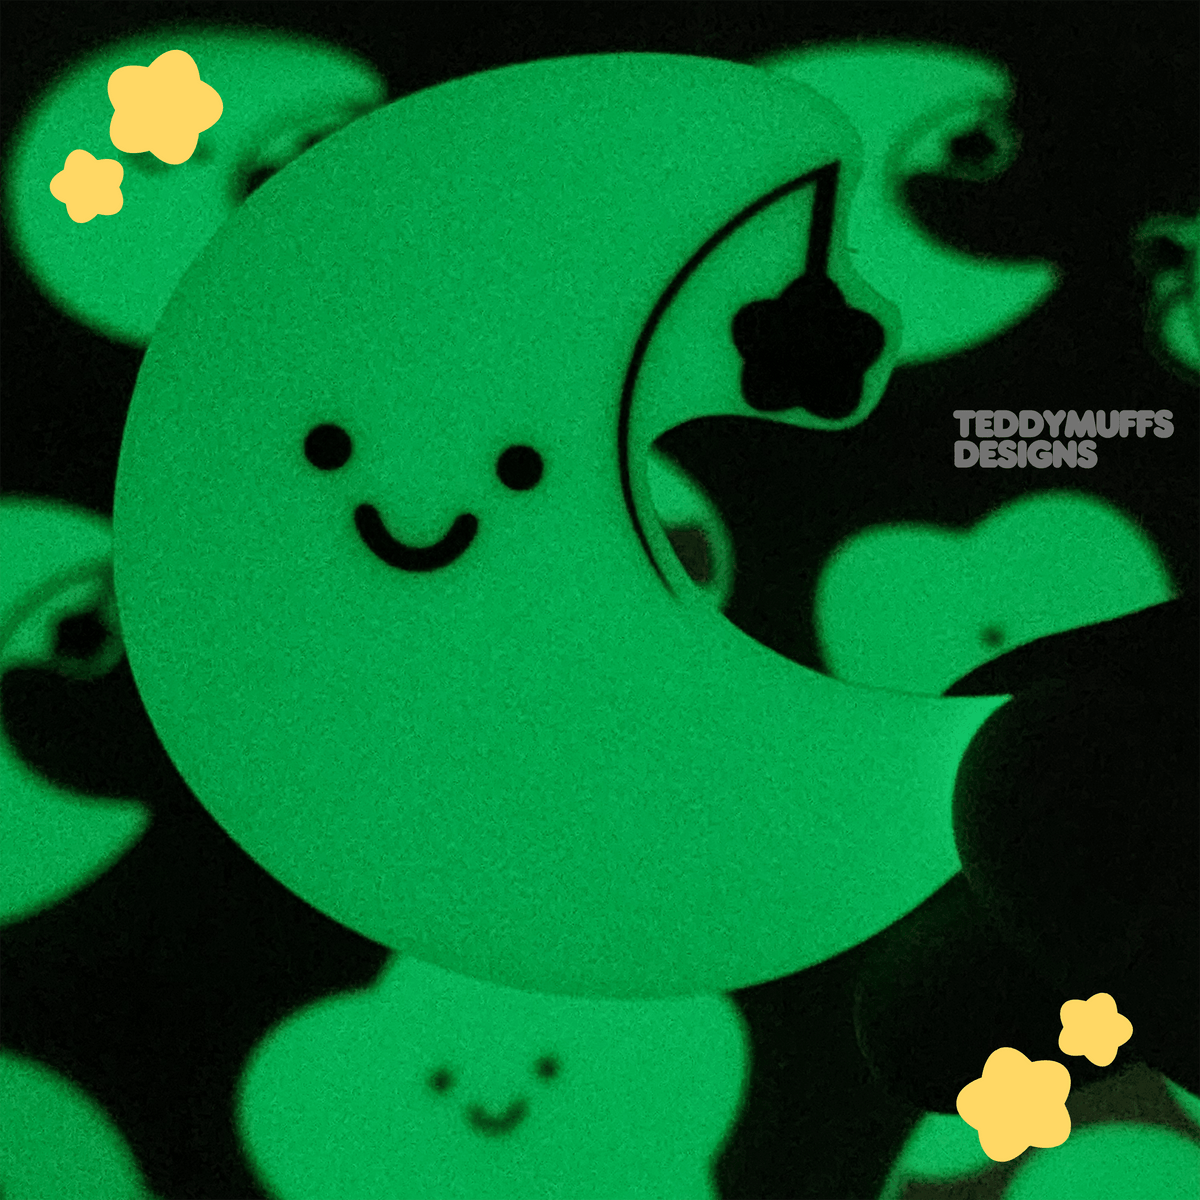 Glow in the Dark Moon Sticker - Teddymuffs Designs